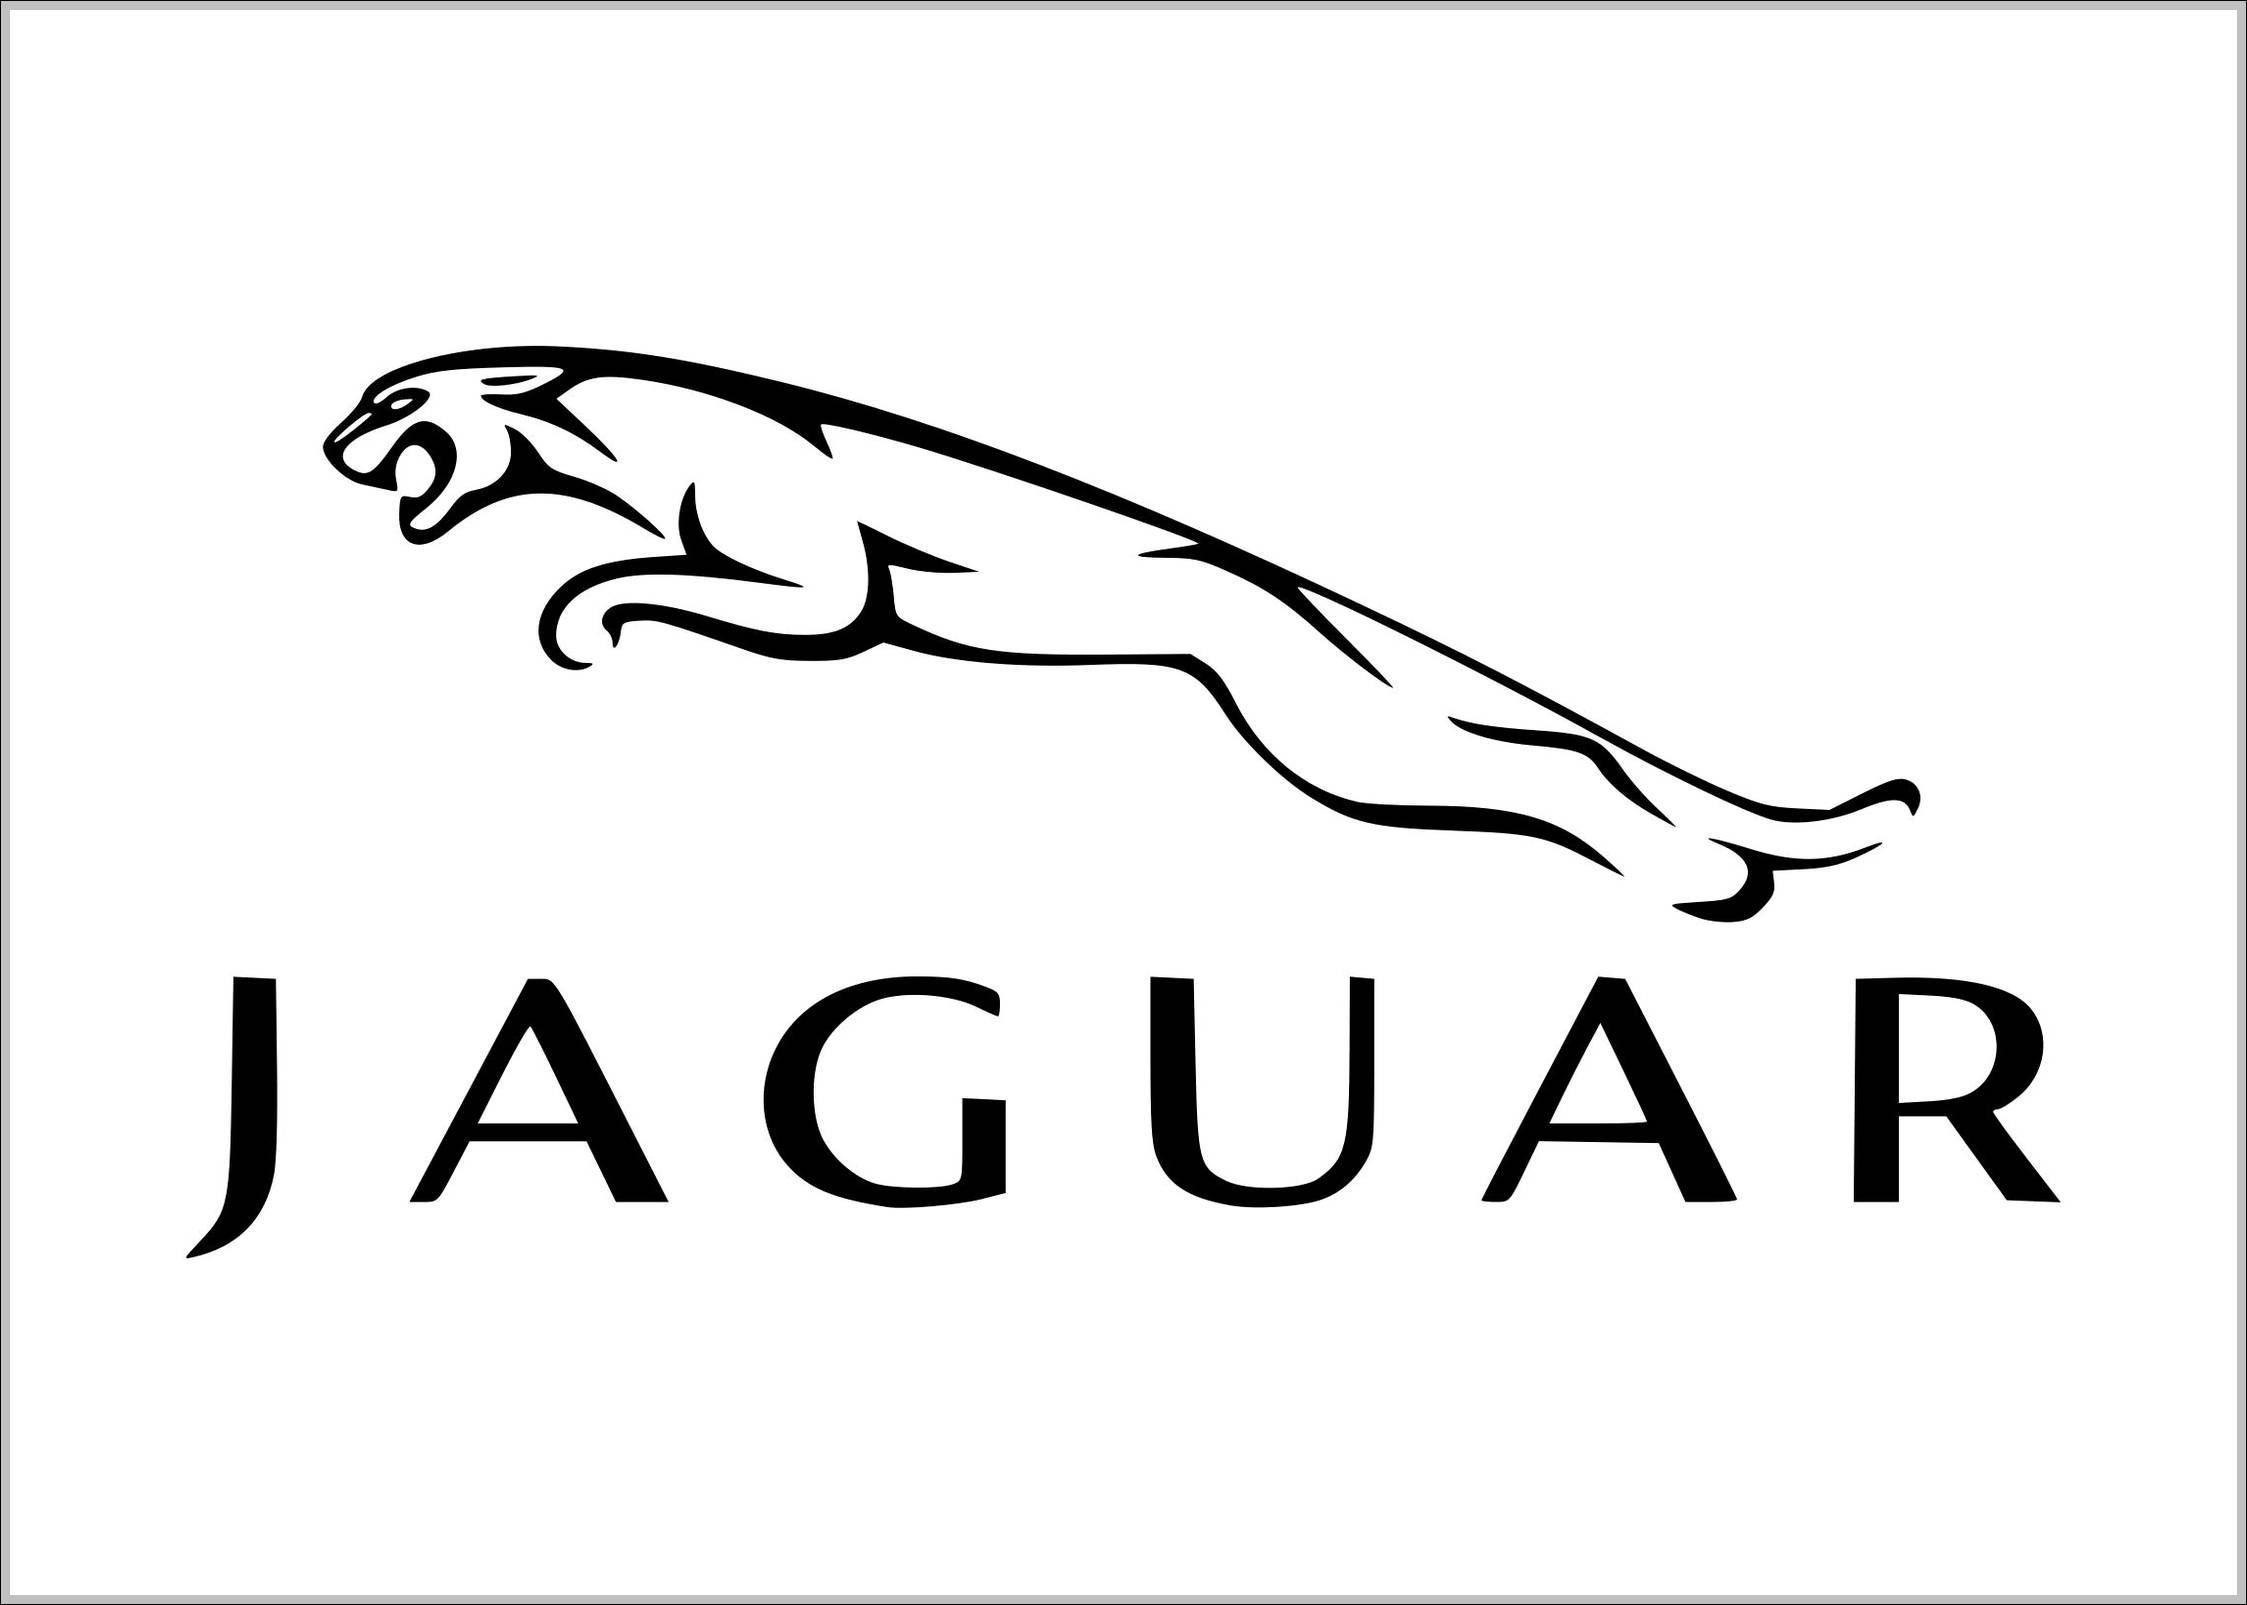 Jaguar logo old outline